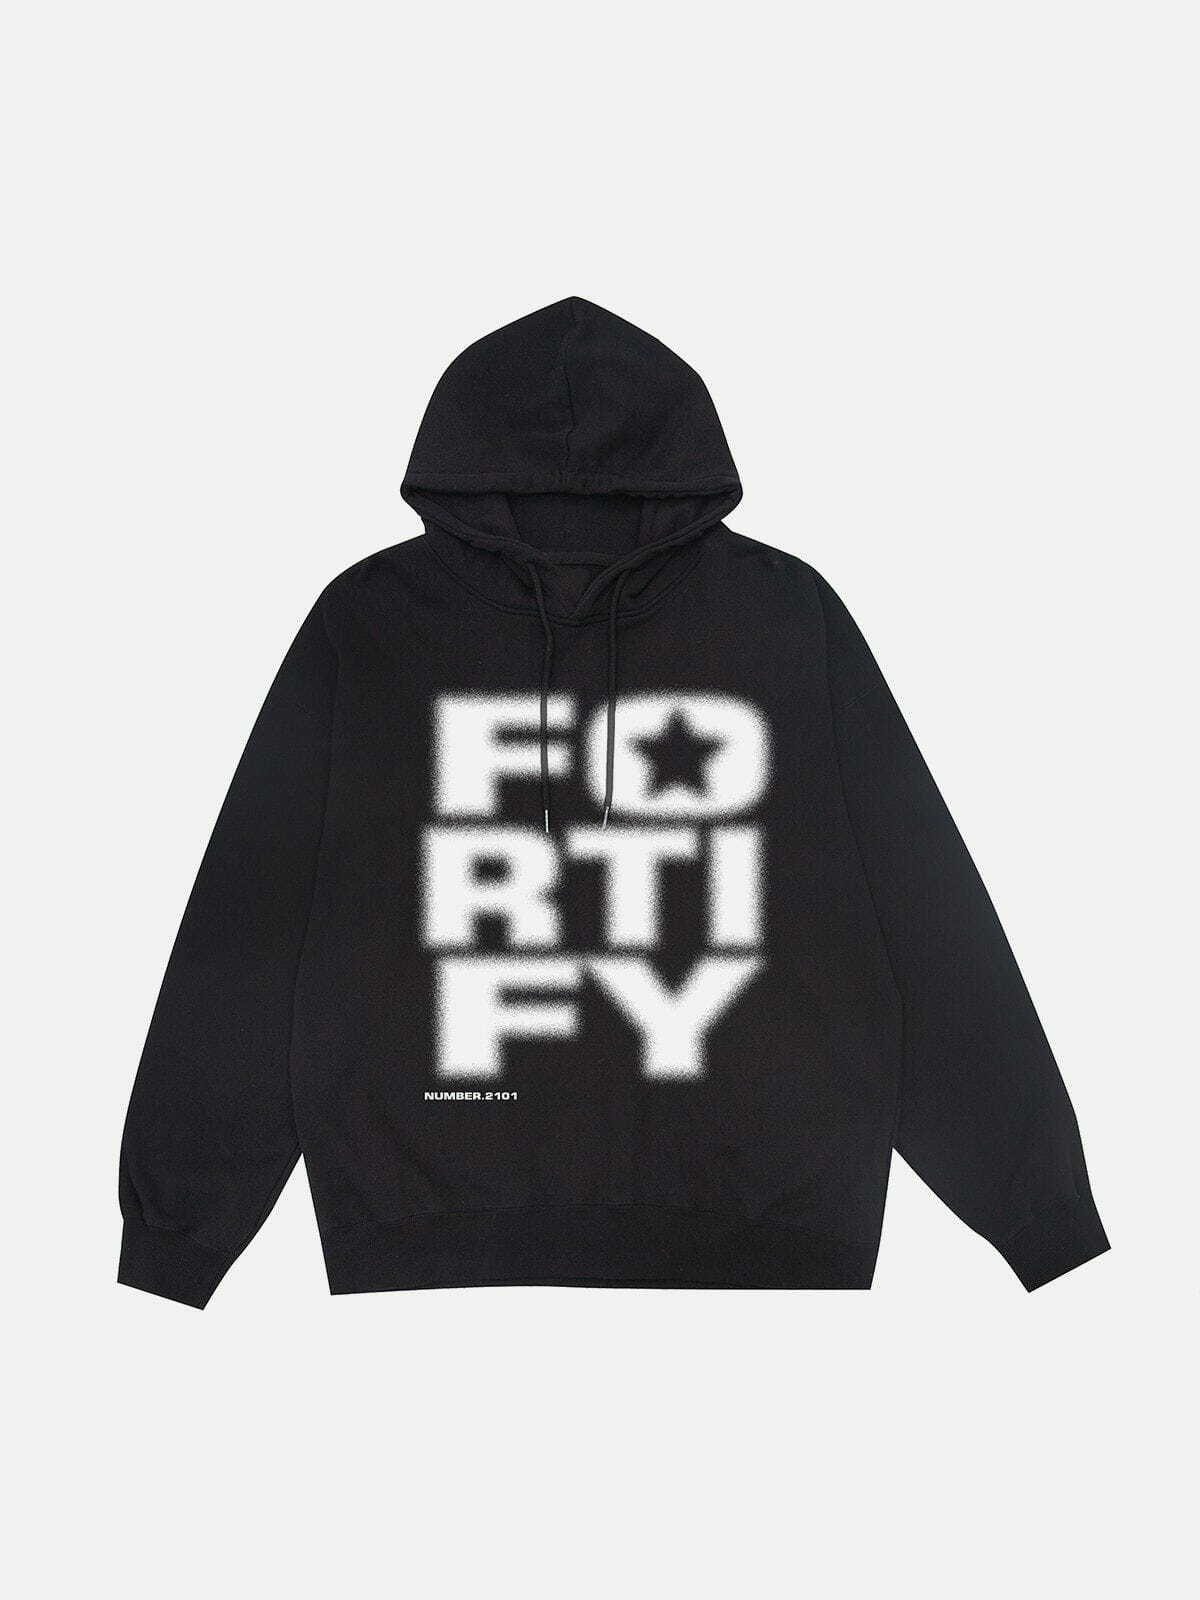 fortify' hoodie edgy & dynamic streetwear 2516